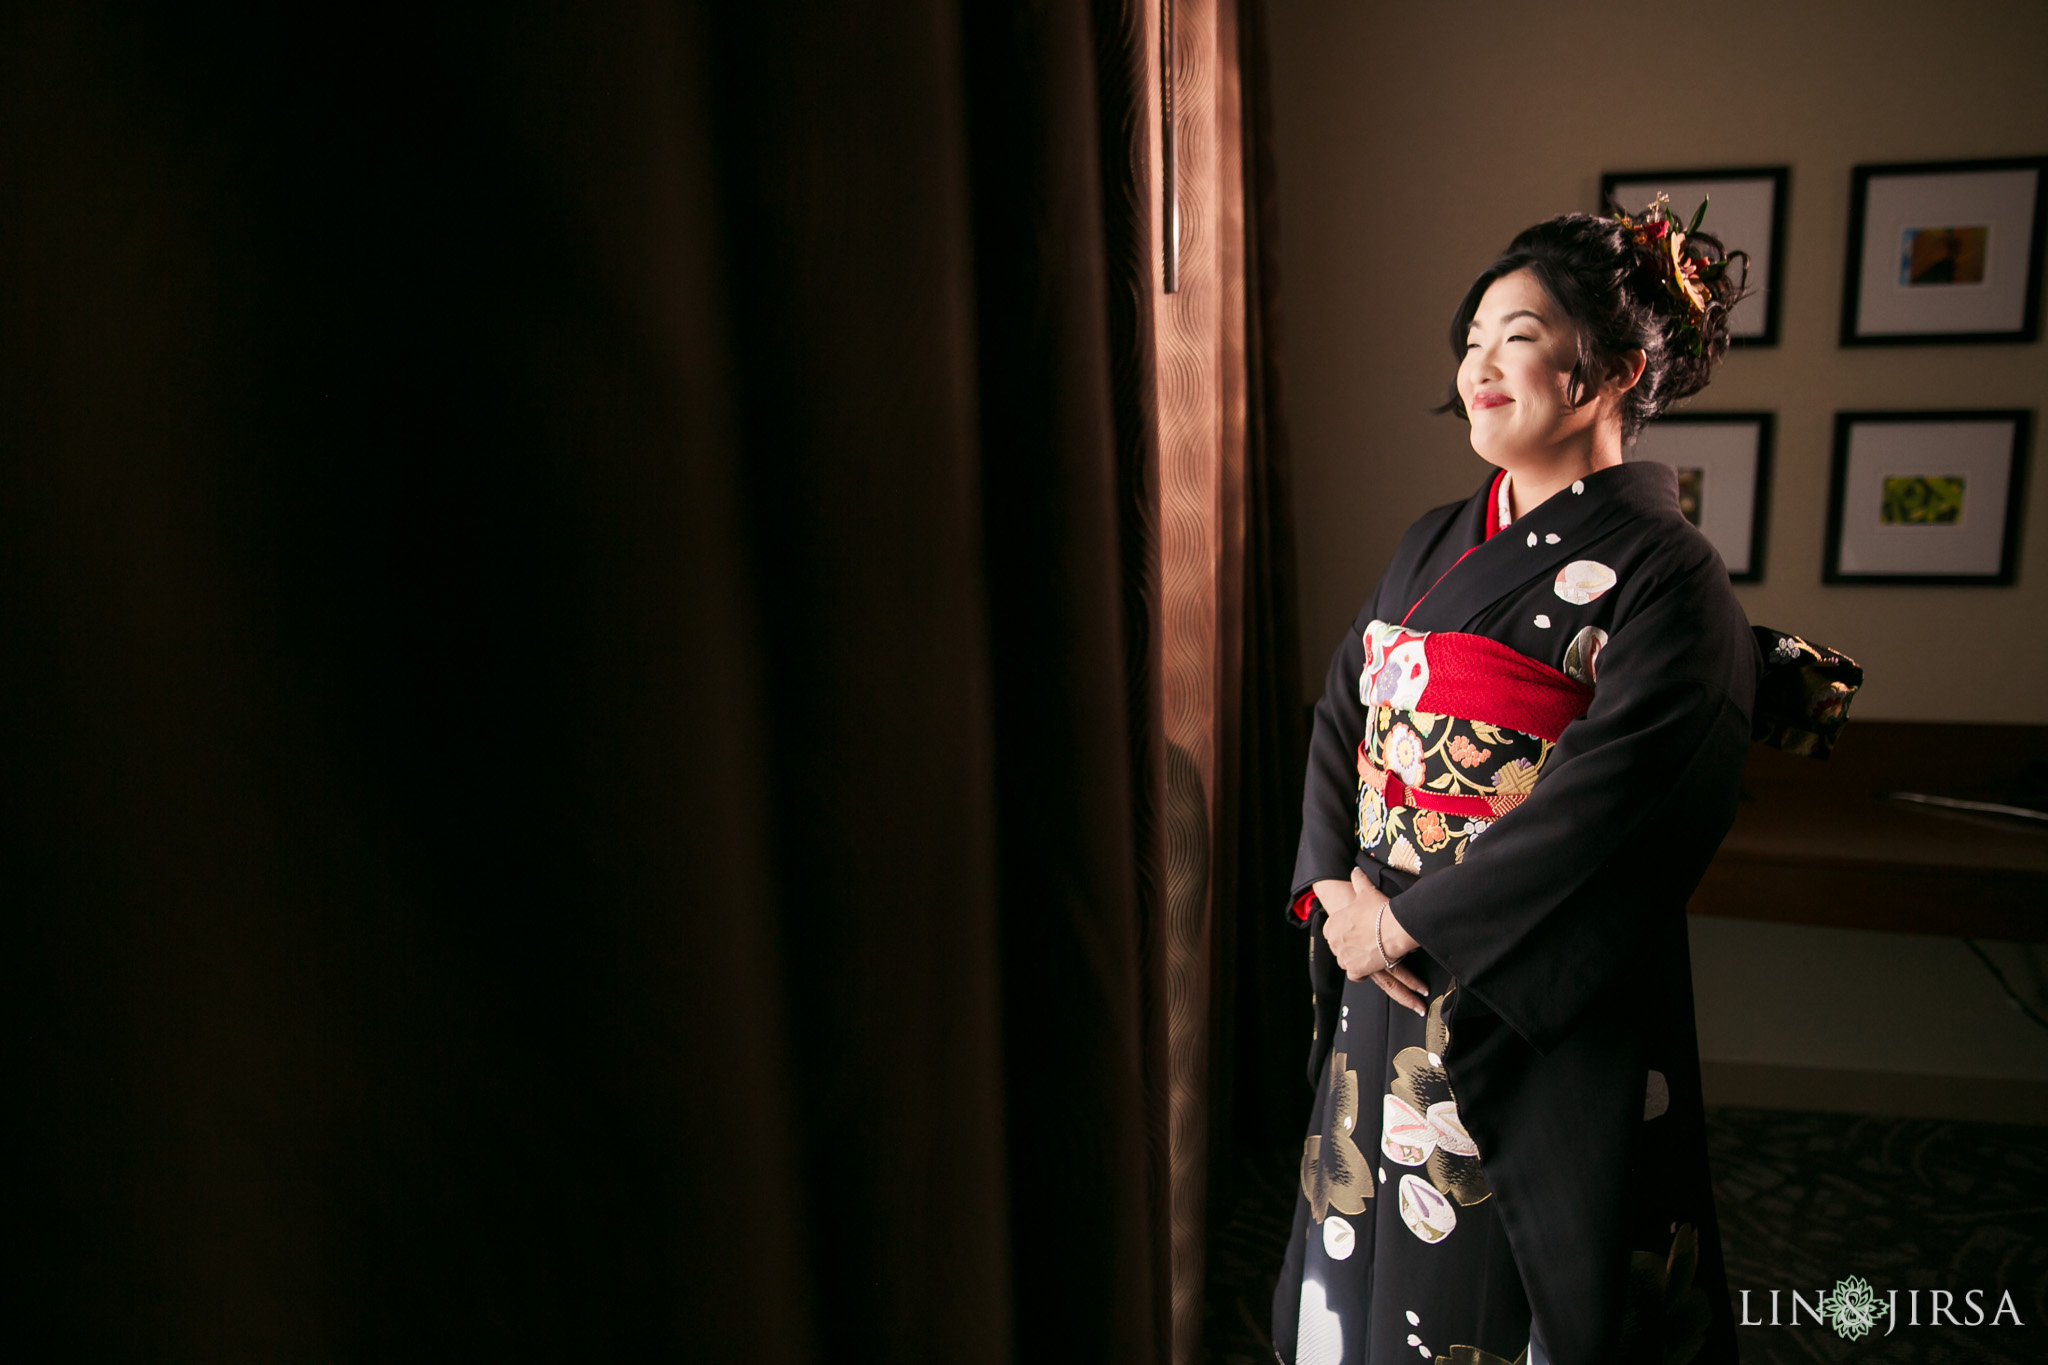 11 gardena valley japanese cultural center wedding photography